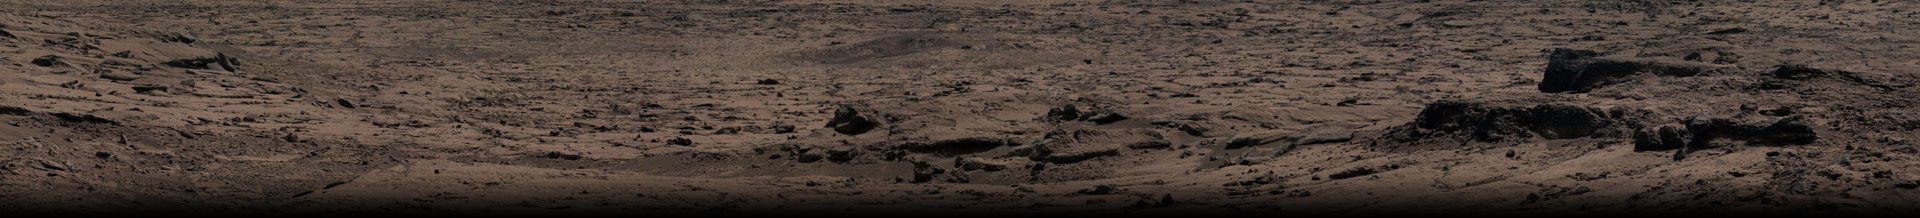 Image: Mars Surface, NASA